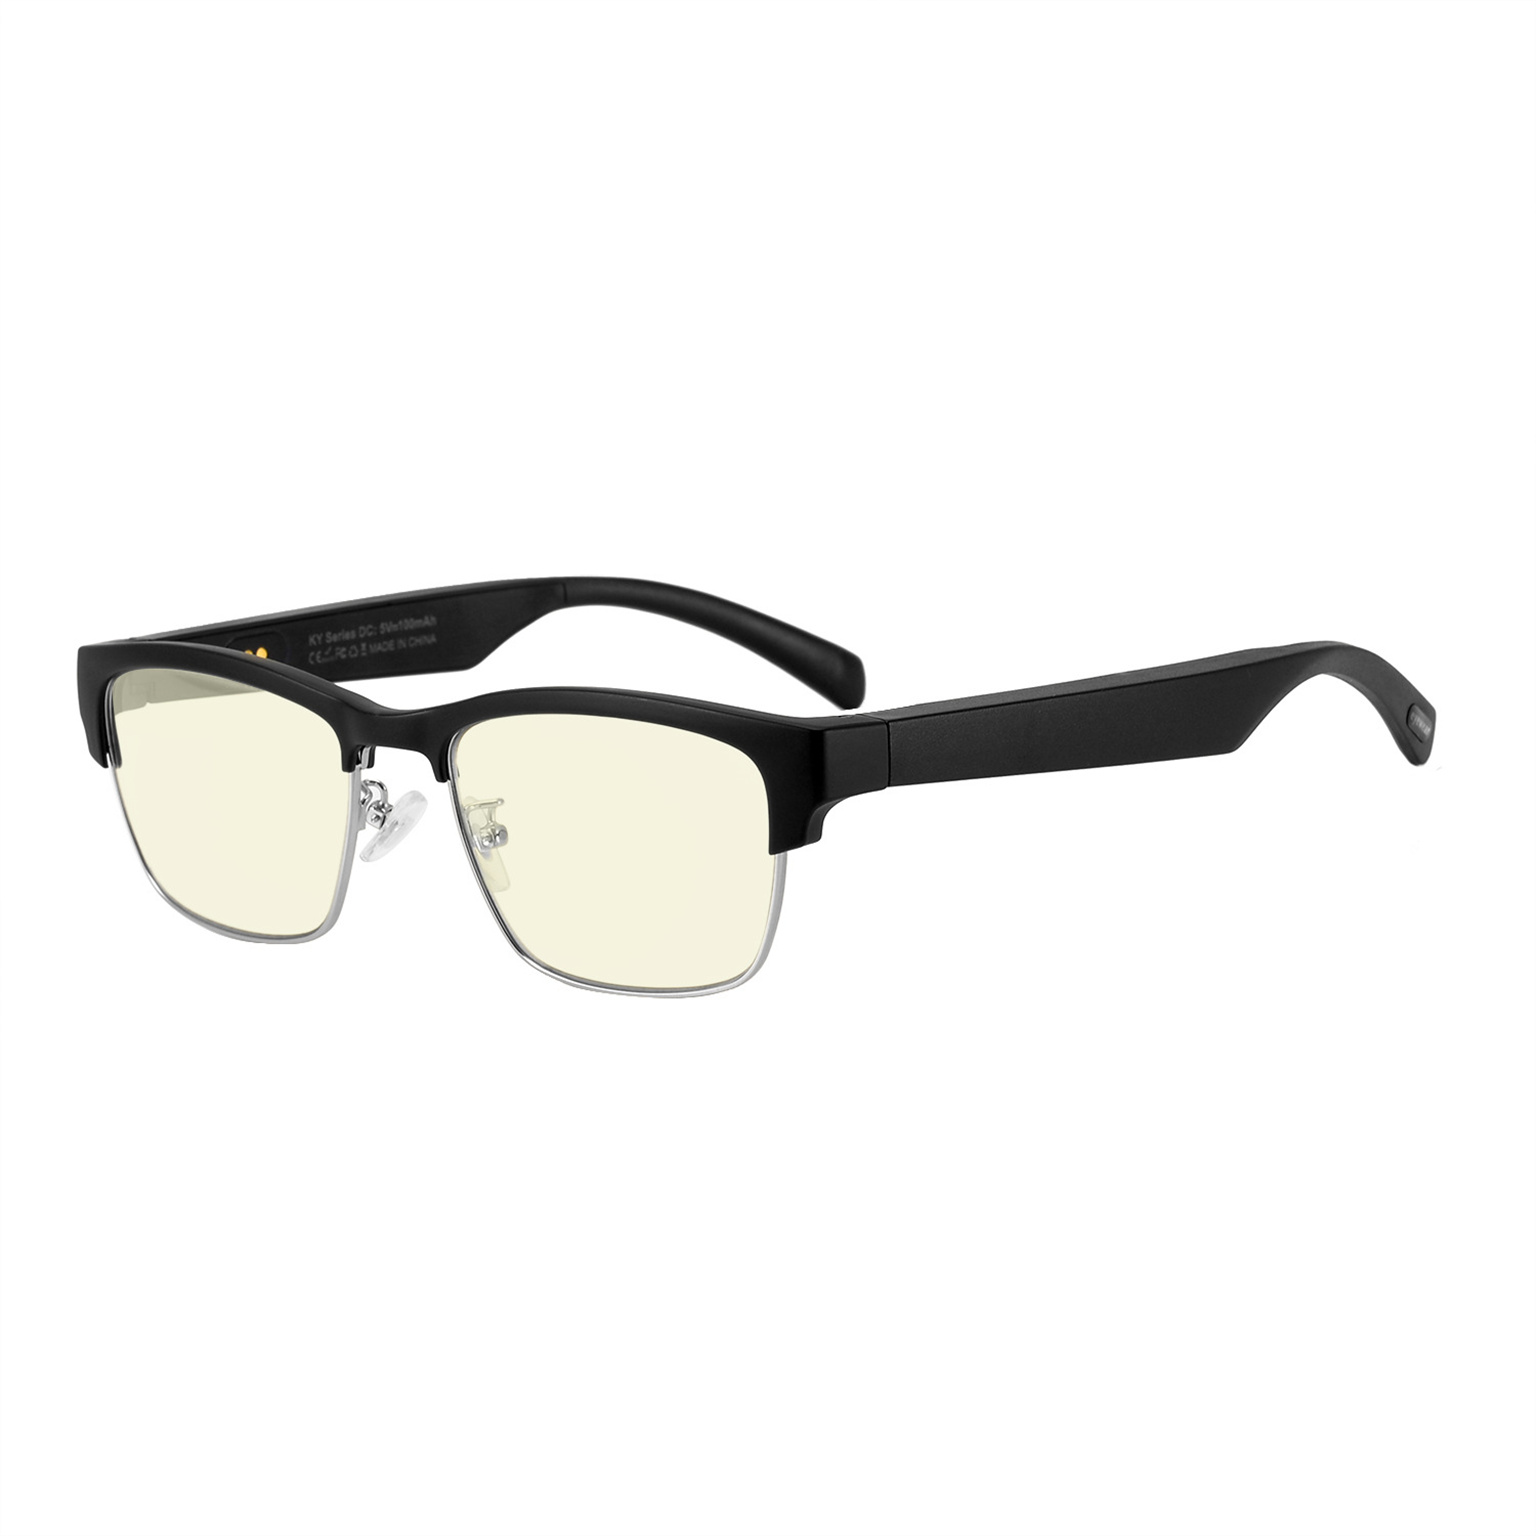 Wholesale custom Smart glasses silicone smart glasses accessories